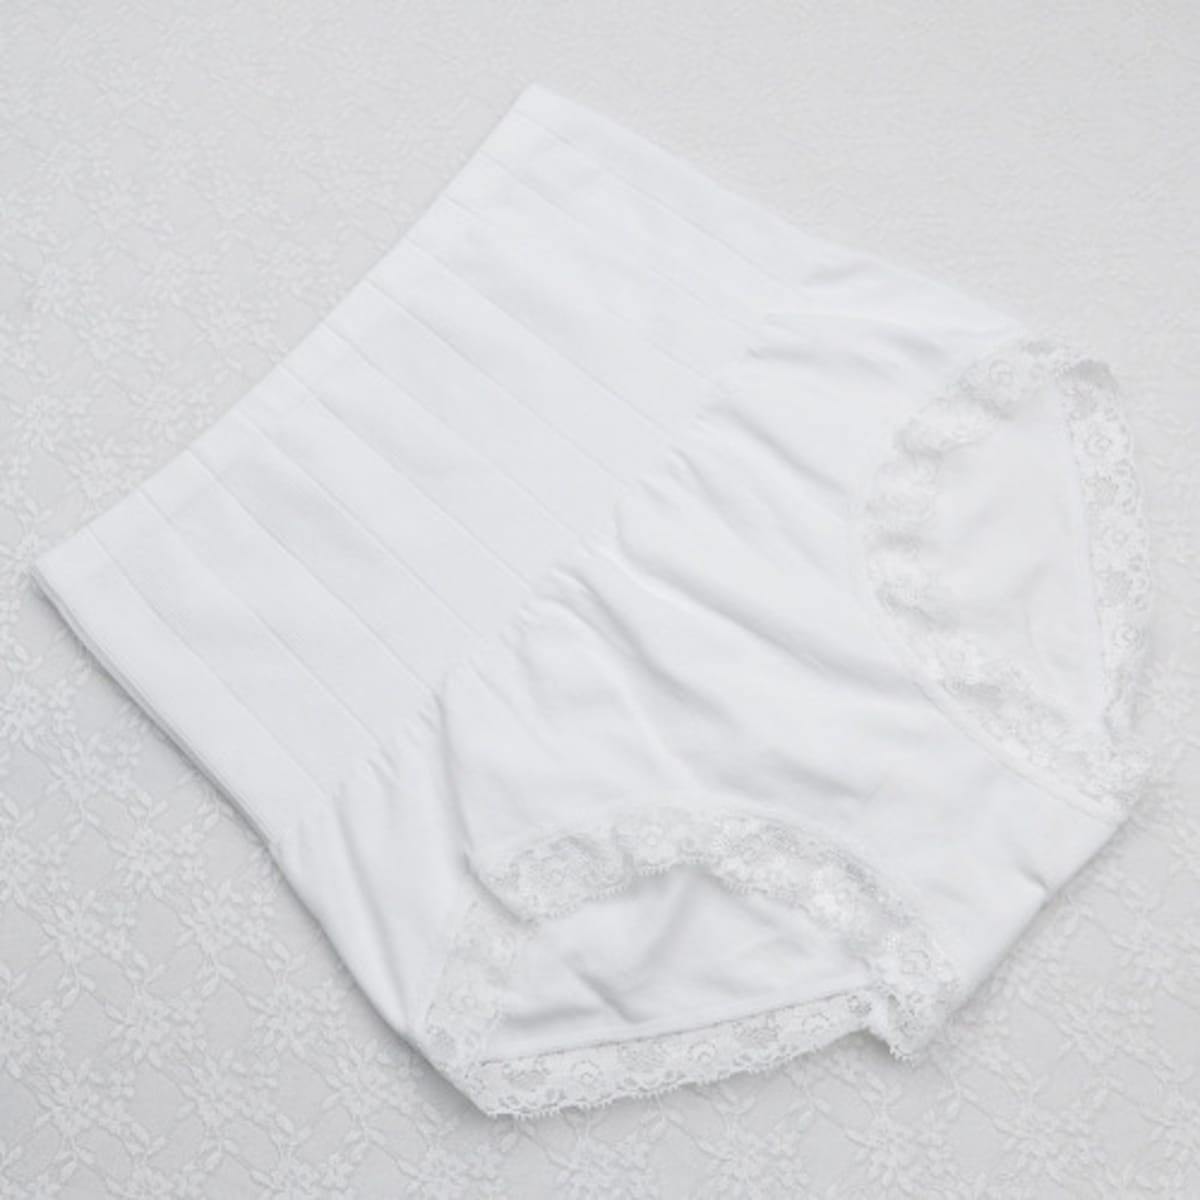 Munafie Seamless Slimming Panty Girdle – White